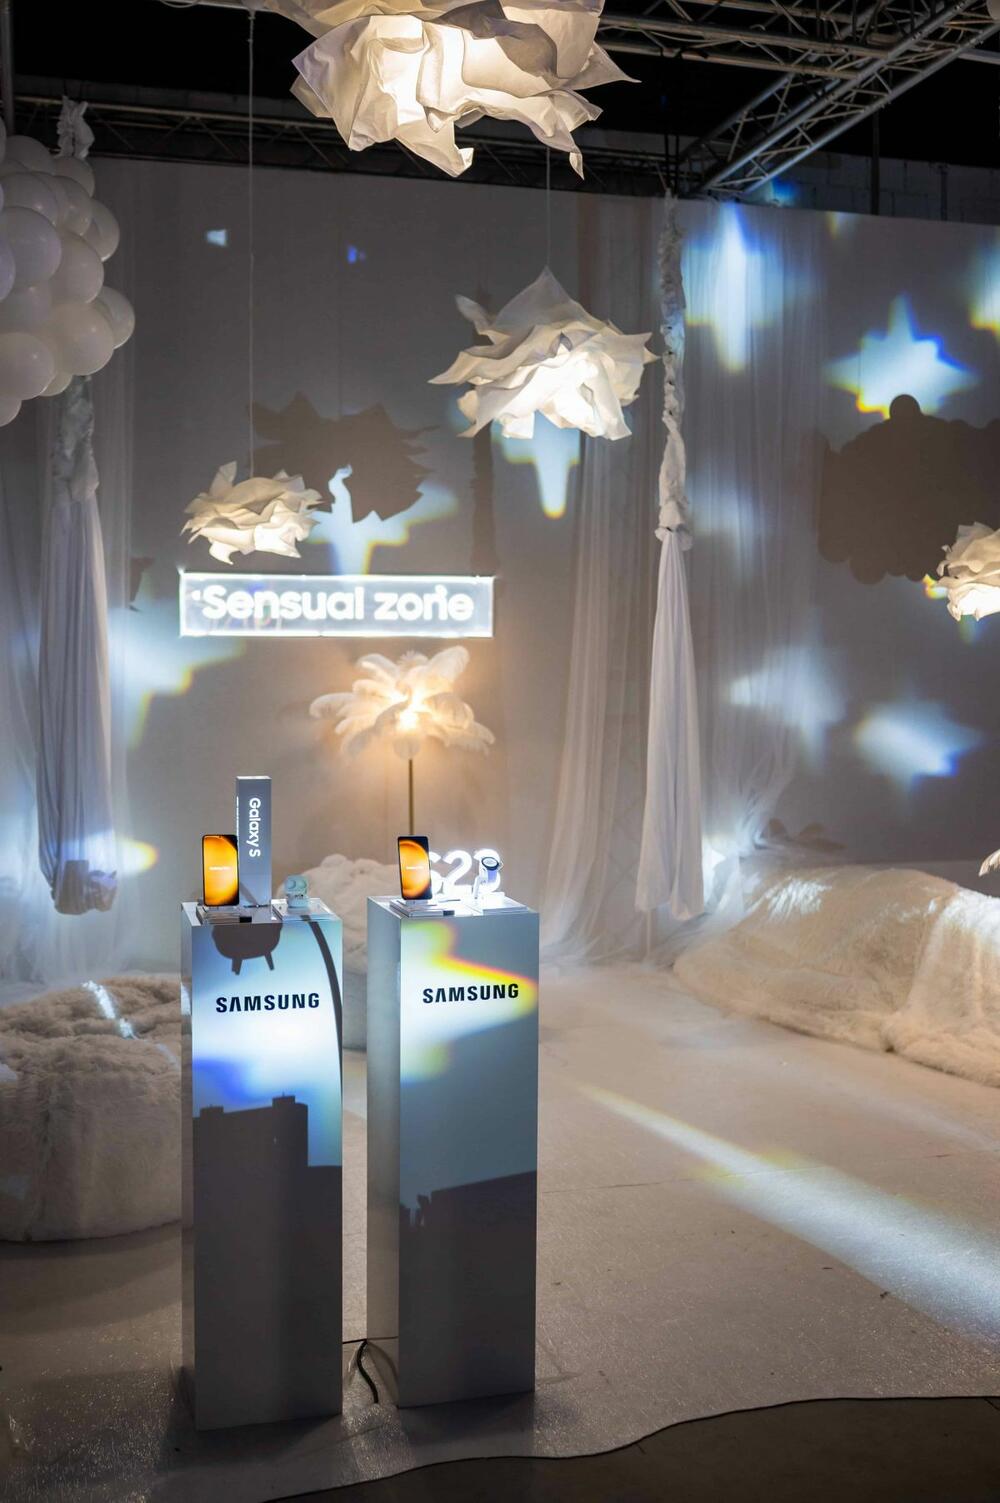 <p>Kompanija <strong>Samsung Electronics</strong> predstavila je <strong>novu eru Galaxy inovacija </strong>na svom spektakularnom događaju u novootvorenom prostoru beogradske galerije Štab.</p>